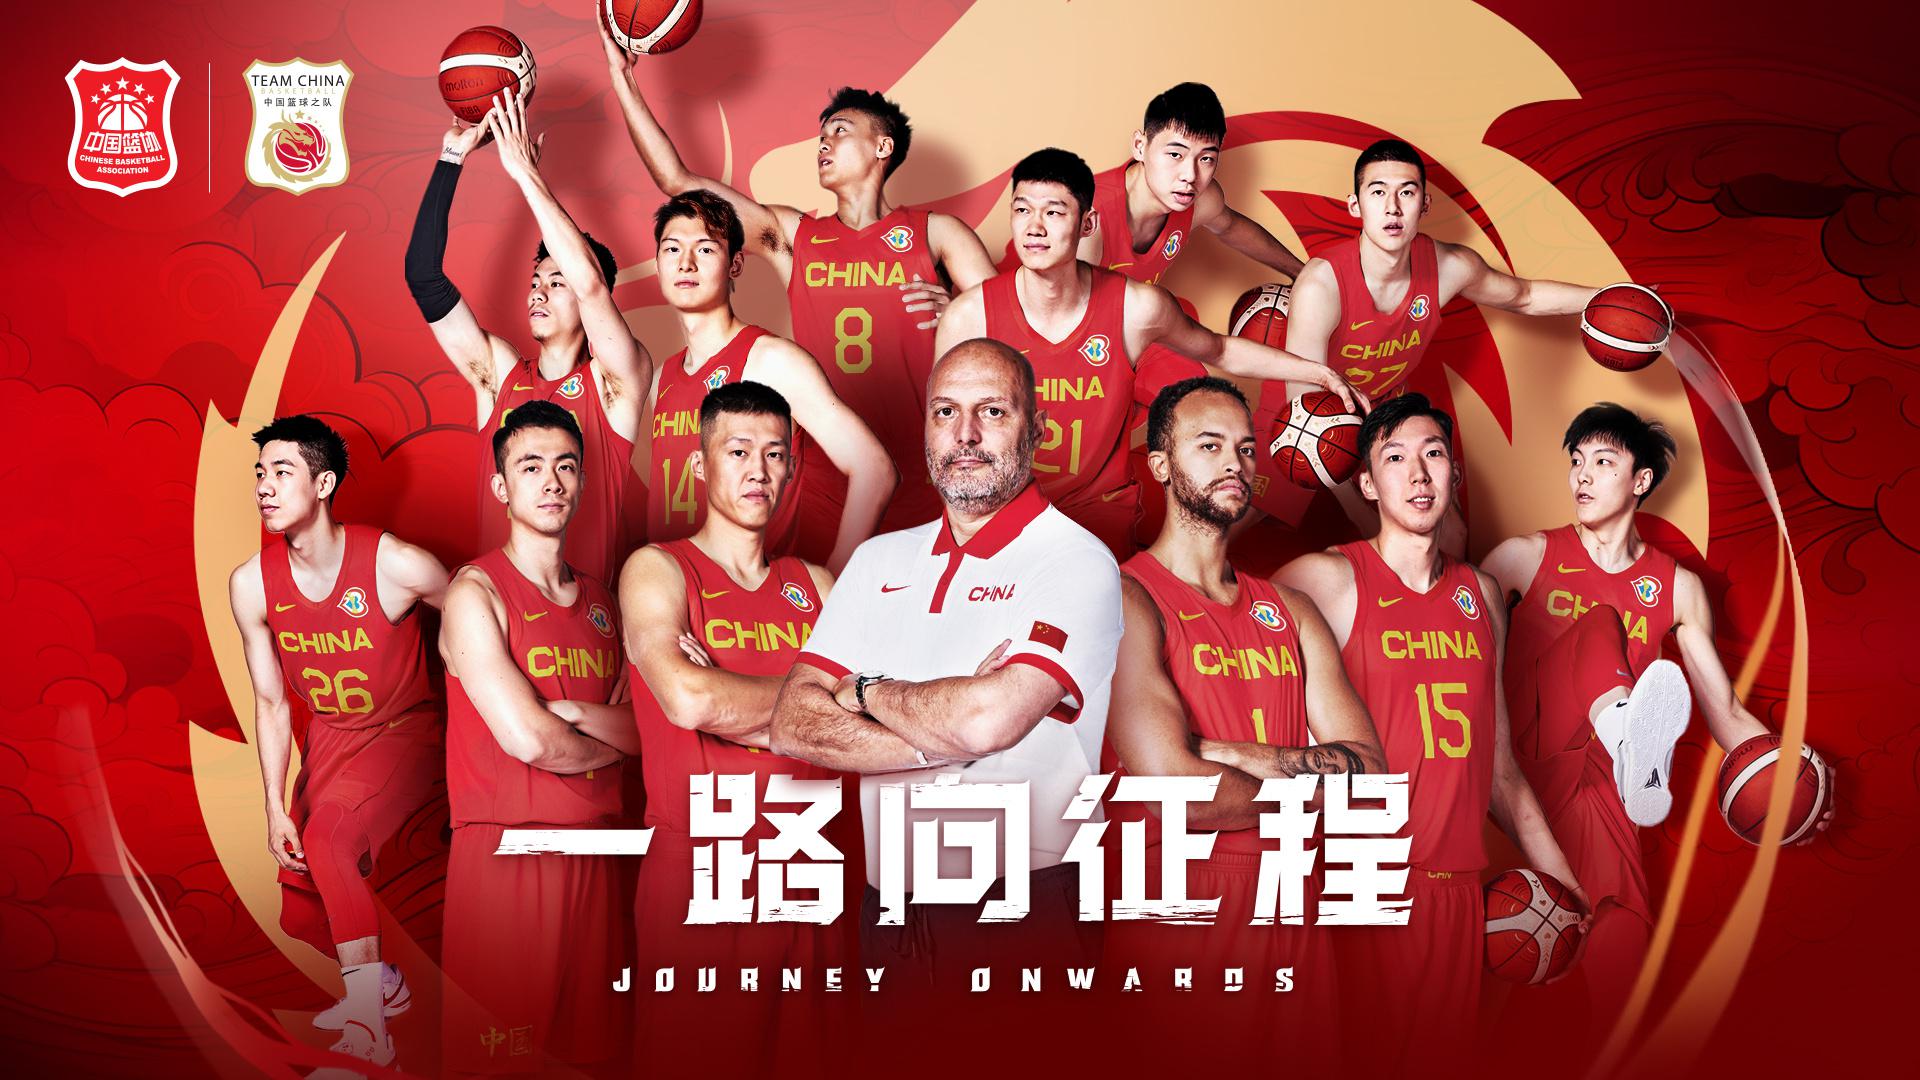 去拼吧！本届中国男篮平均身高202.9cm 平均年龄26.6岁(1)